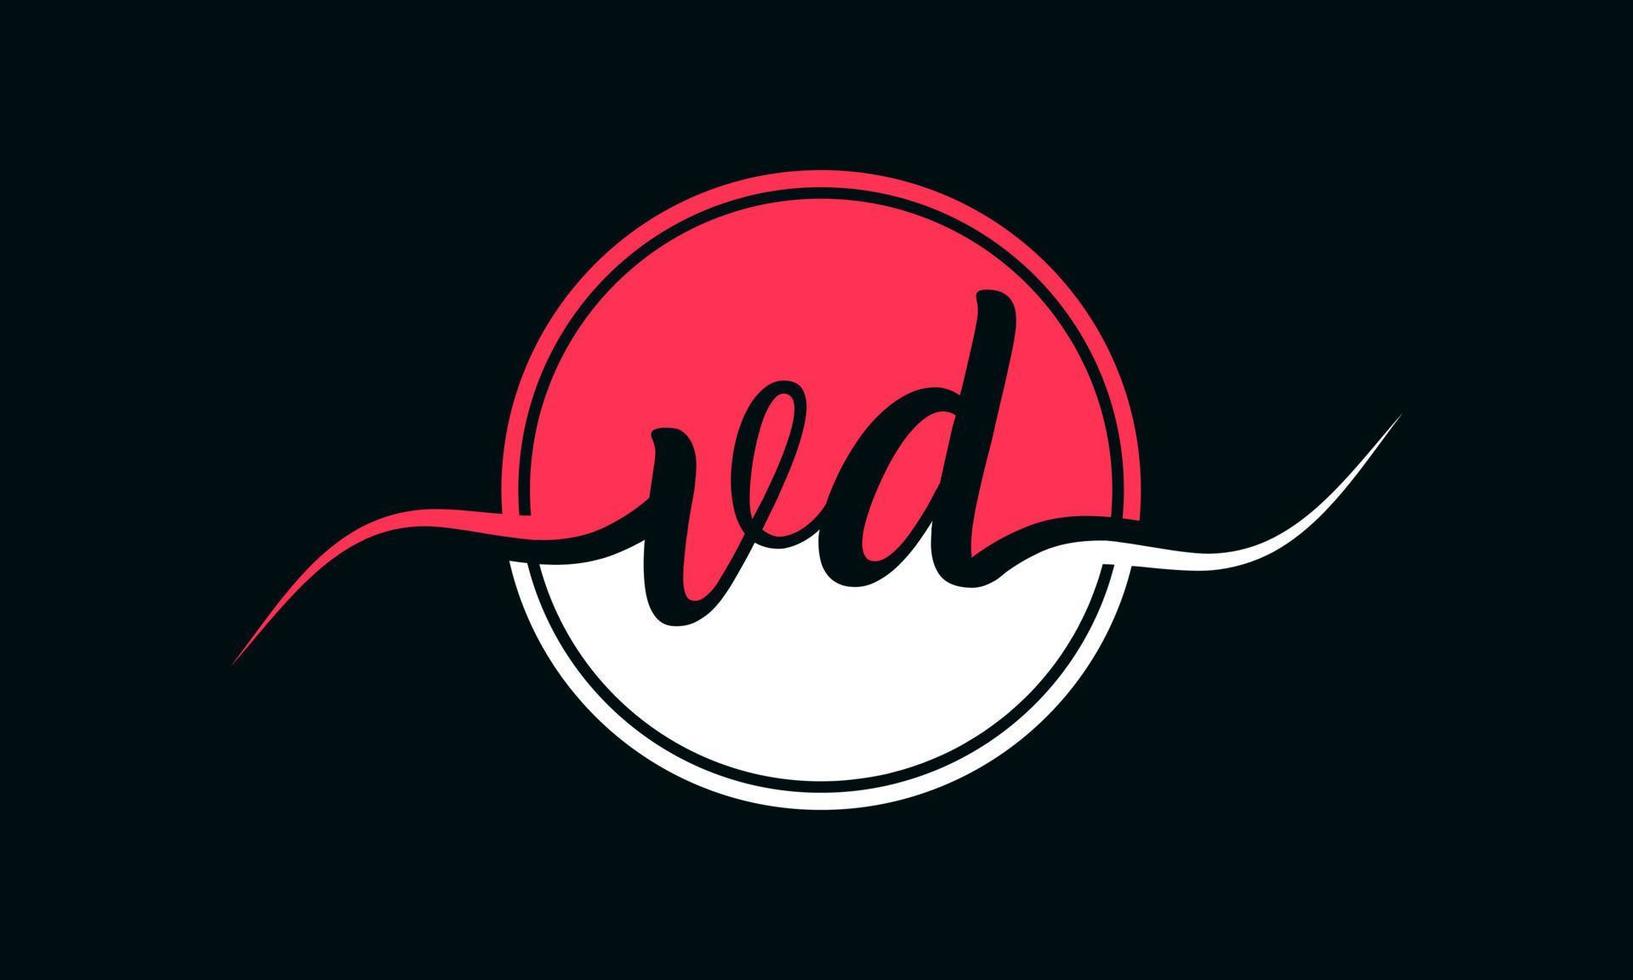 logotipo inicial da letra vd com círculo interno na cor branca e rosa. vetor profissional.